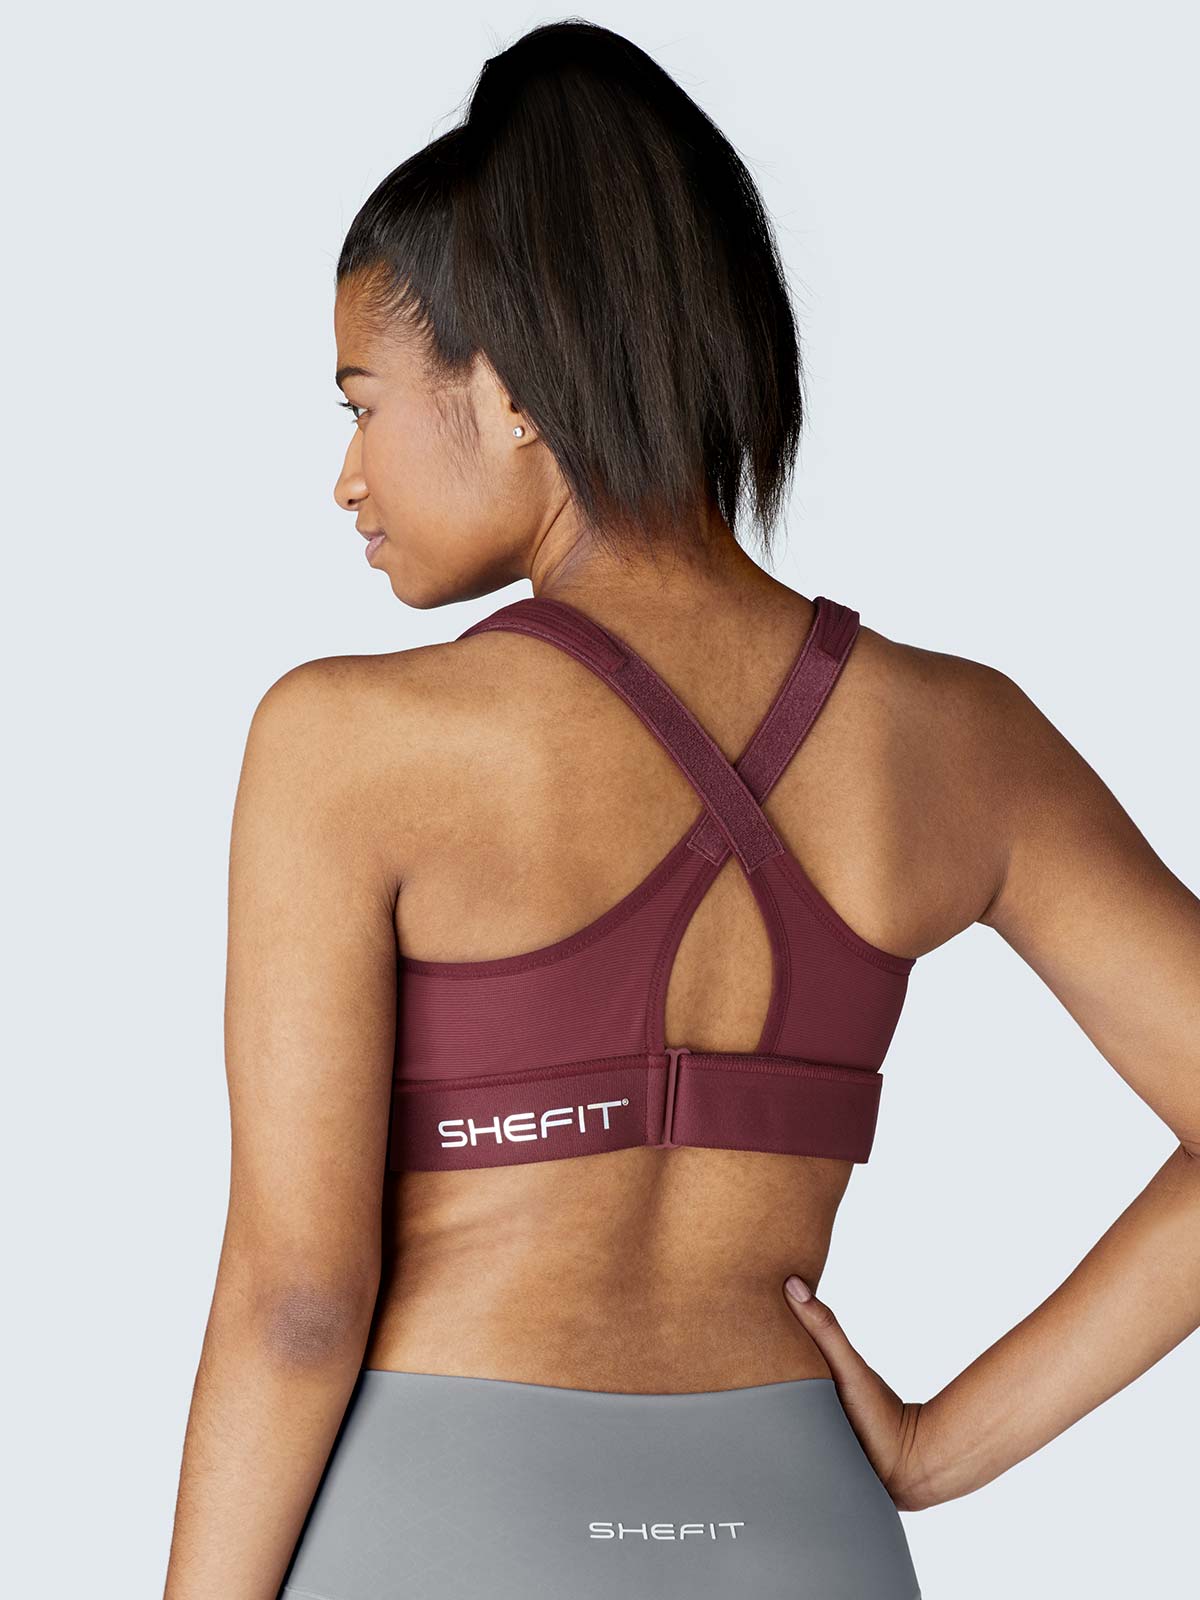 Shefit Ultimate Sport Bra Black Womens Size 42DD-42G Luxe NWT